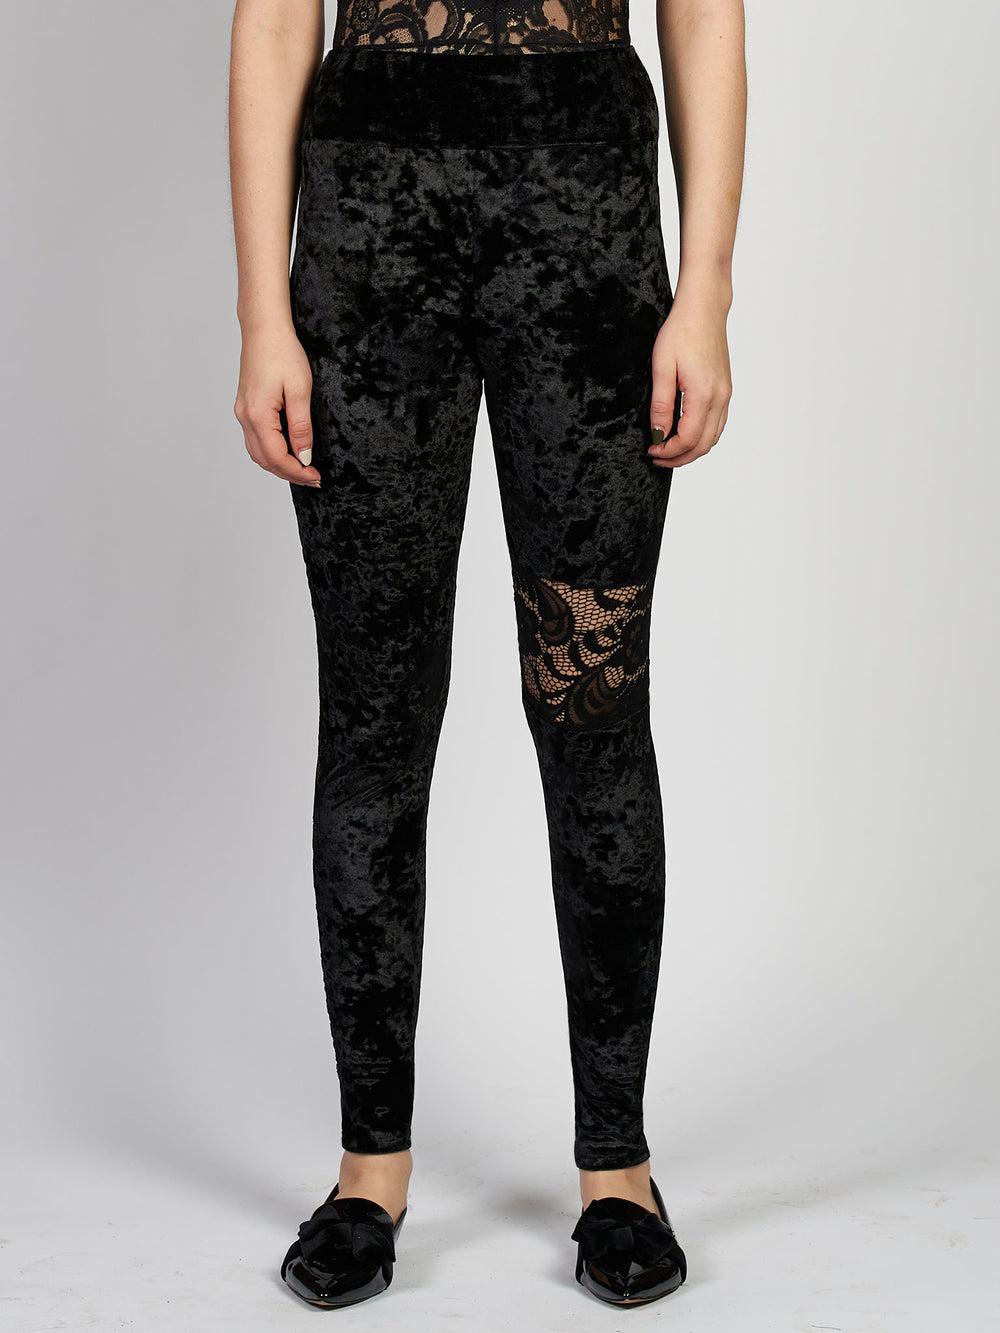 Black velvet leggings with lace on sides